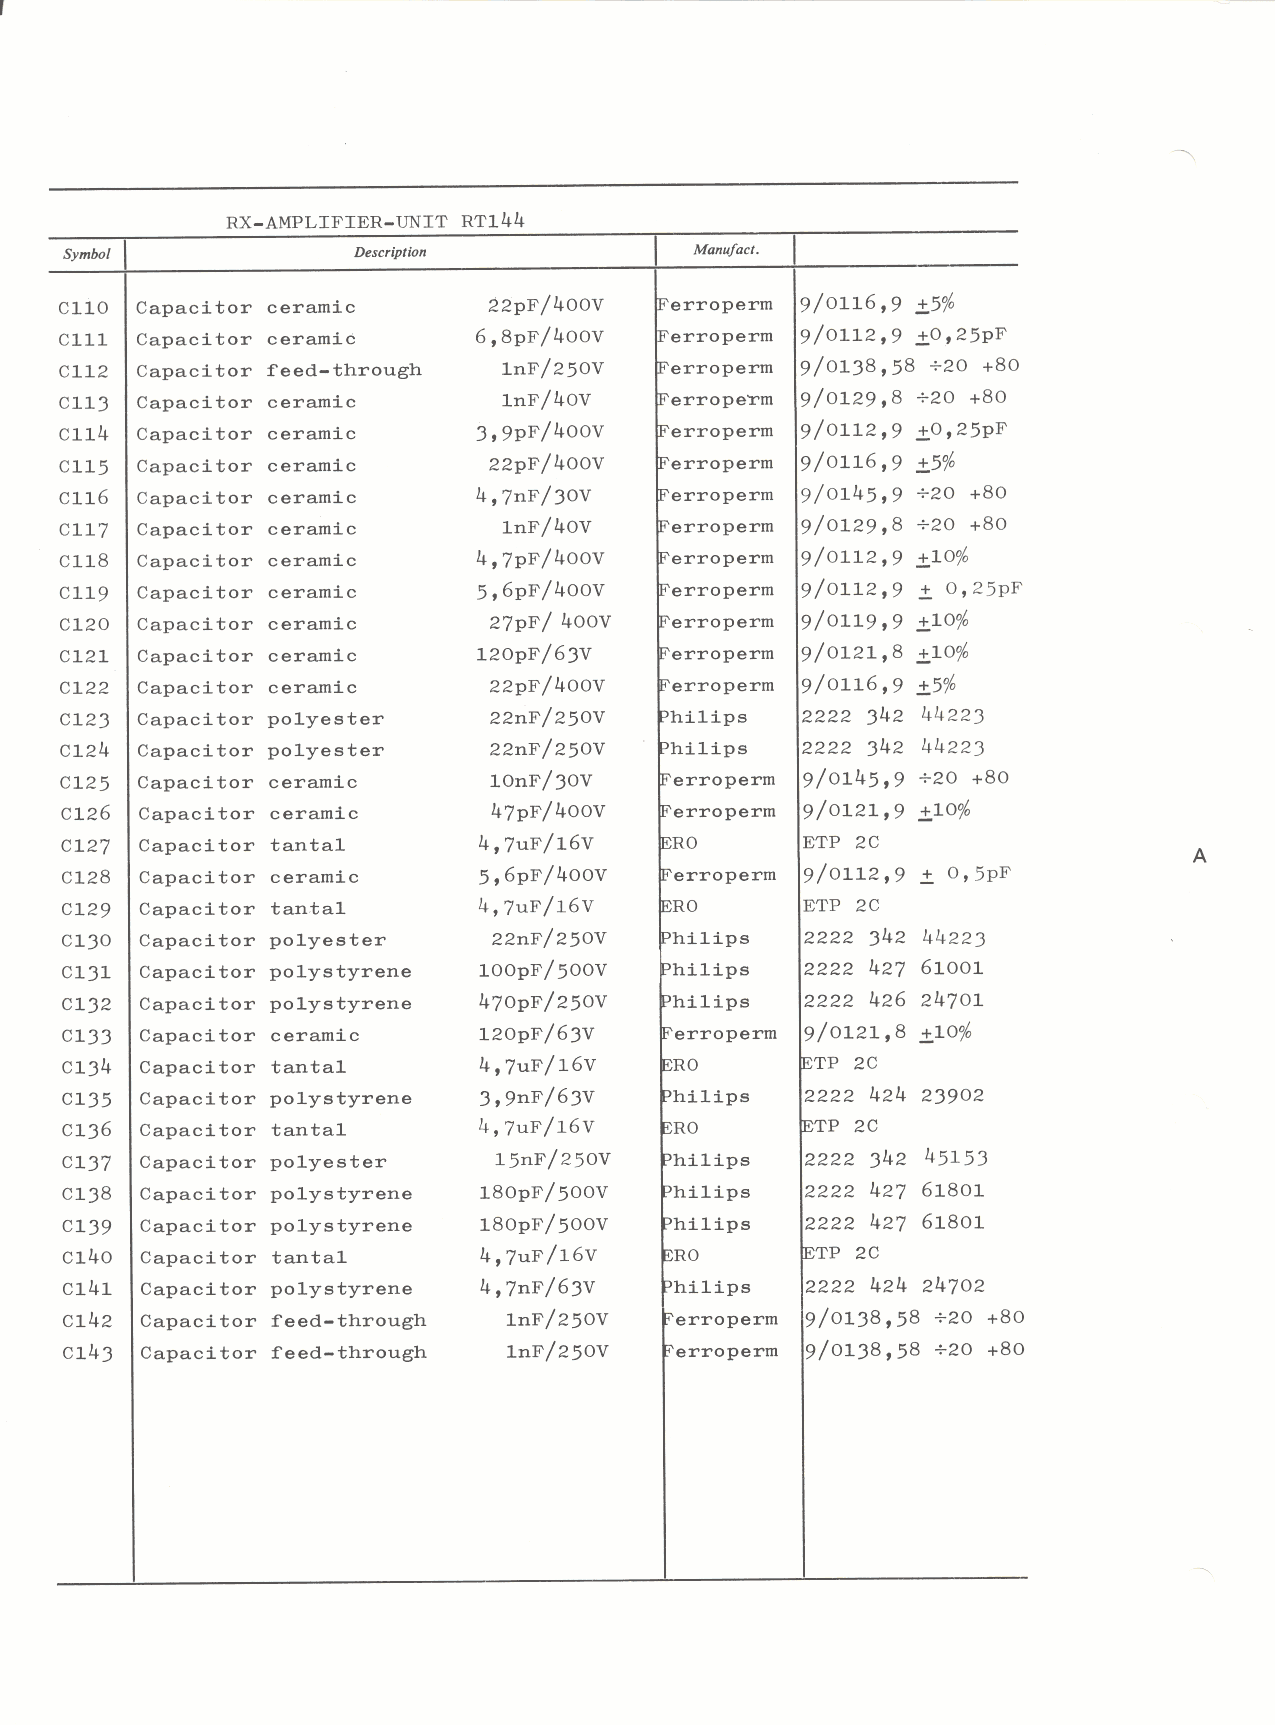 RX-amplifier-unit Part list-2